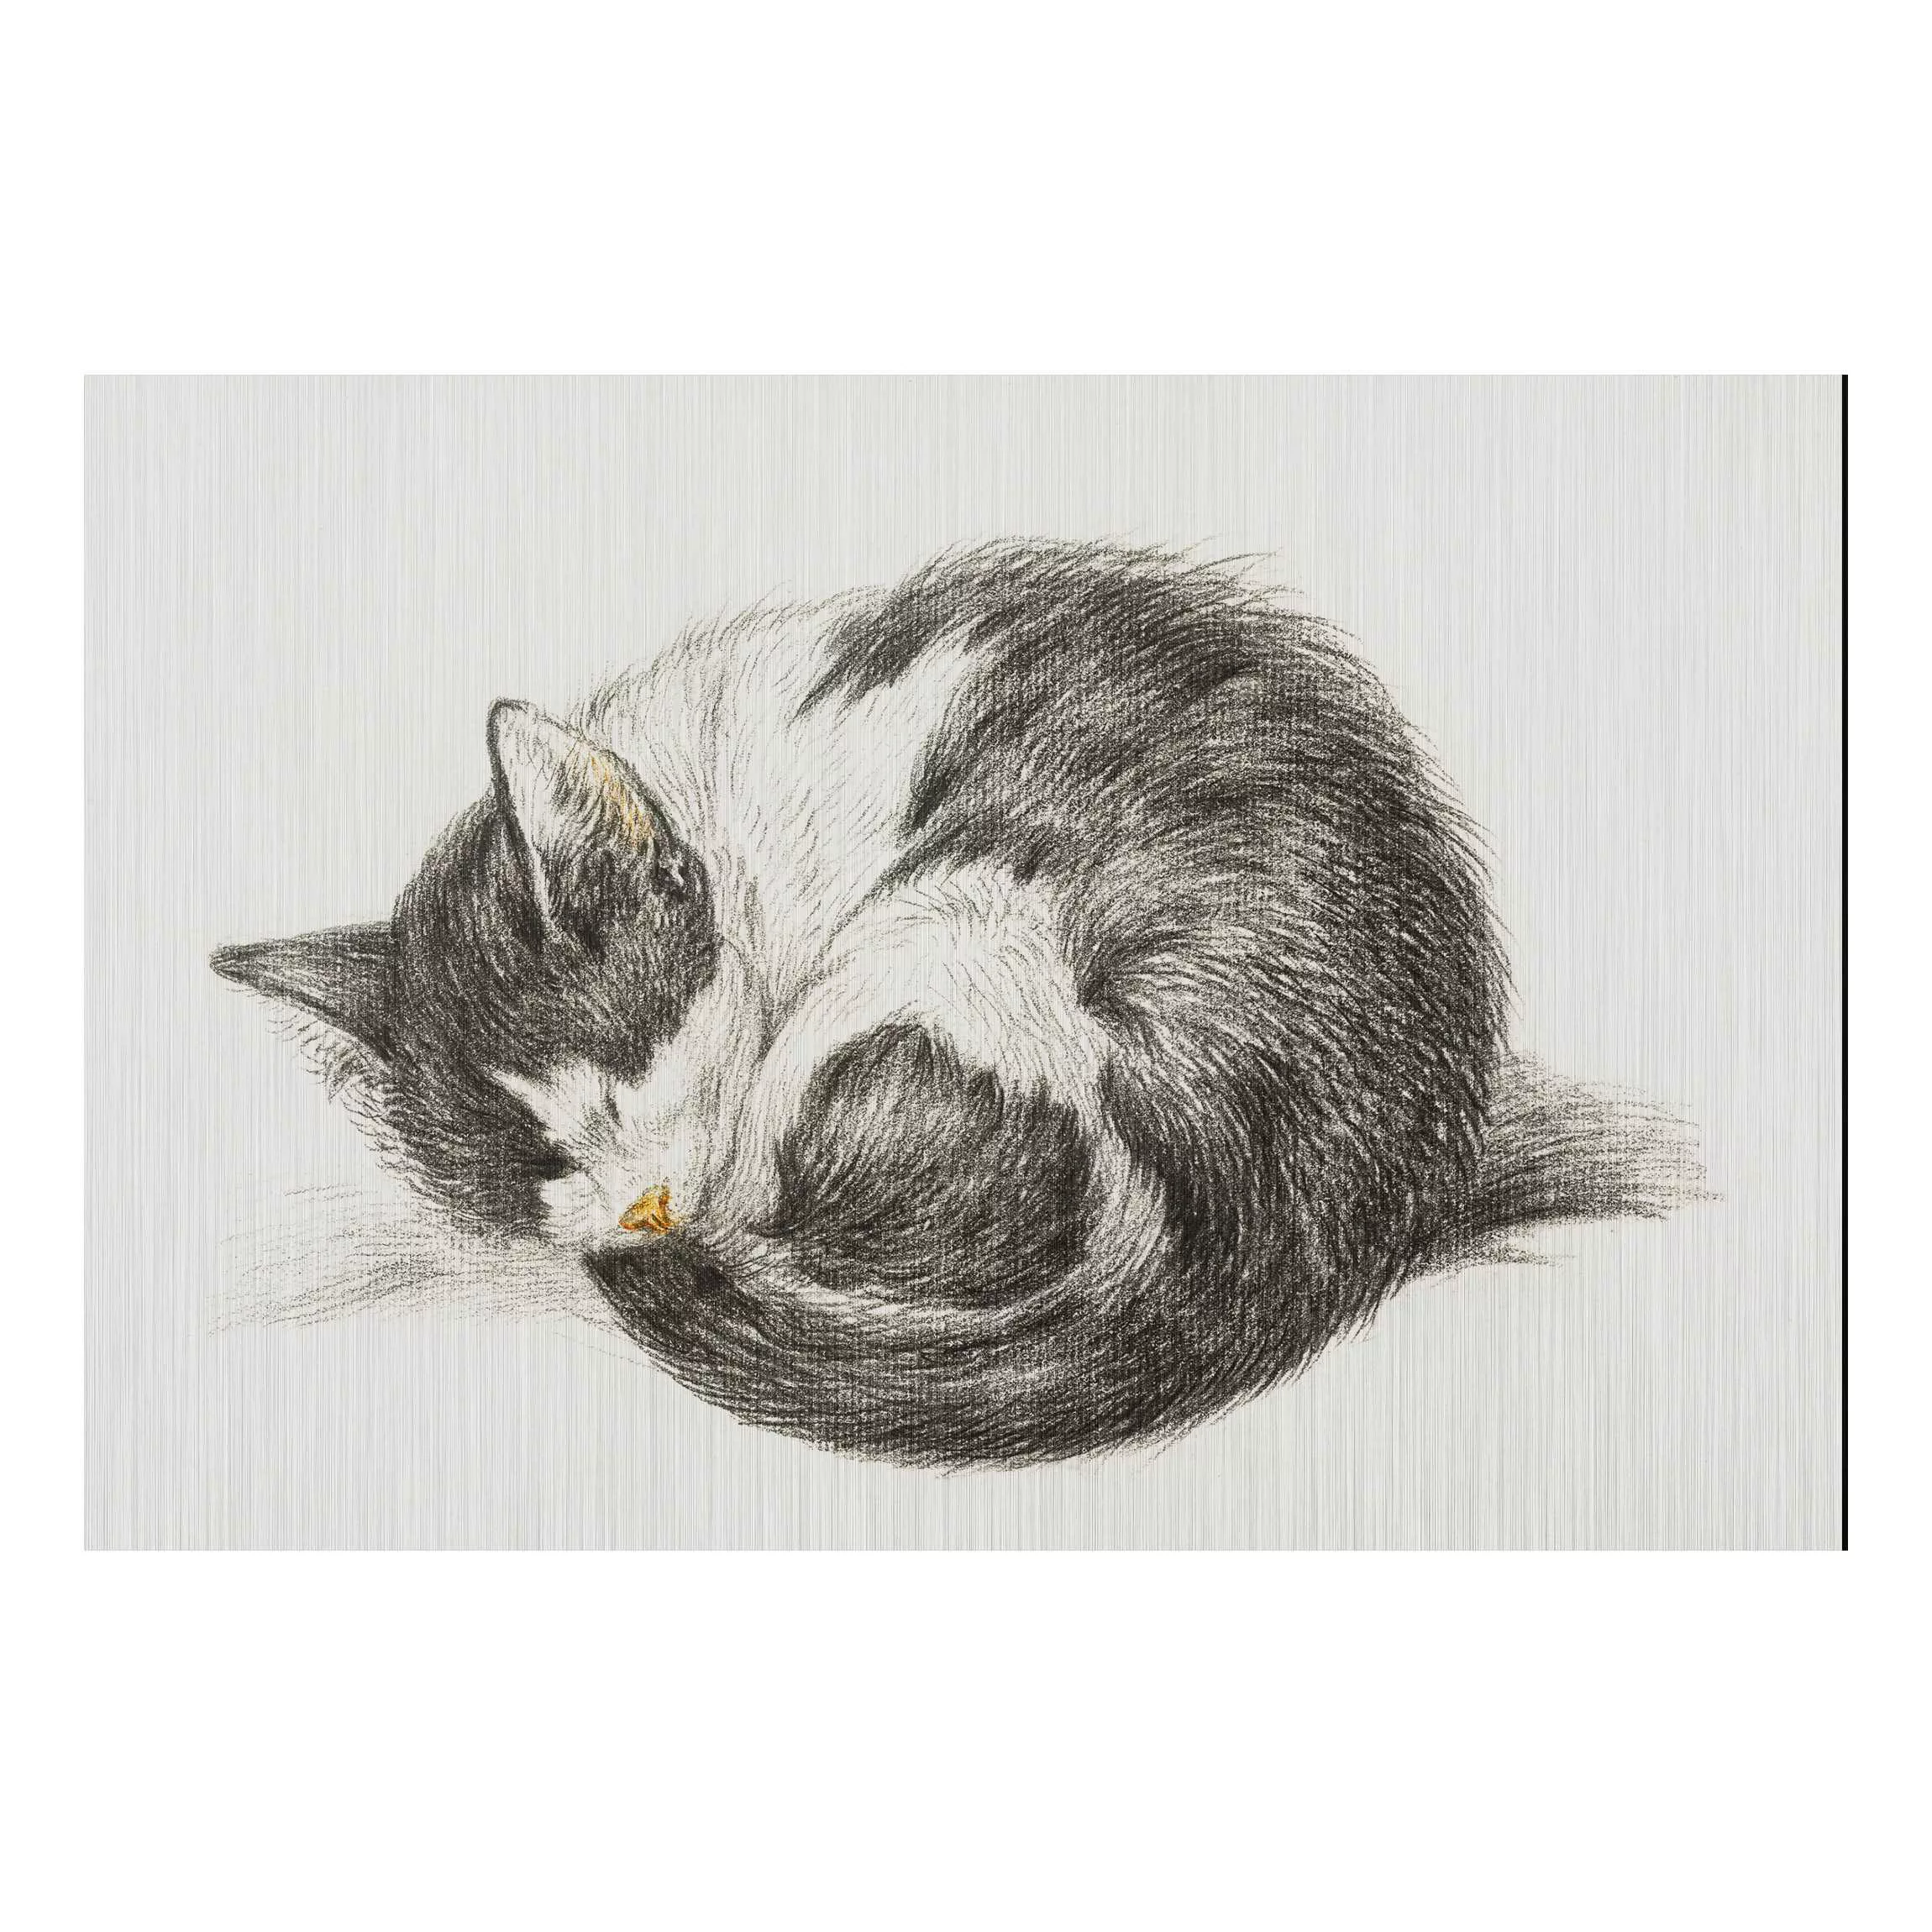 Alu-Dibond Bild Tiere - Querformat 3:2 Vintage Zeichnung Katze II günstig online kaufen